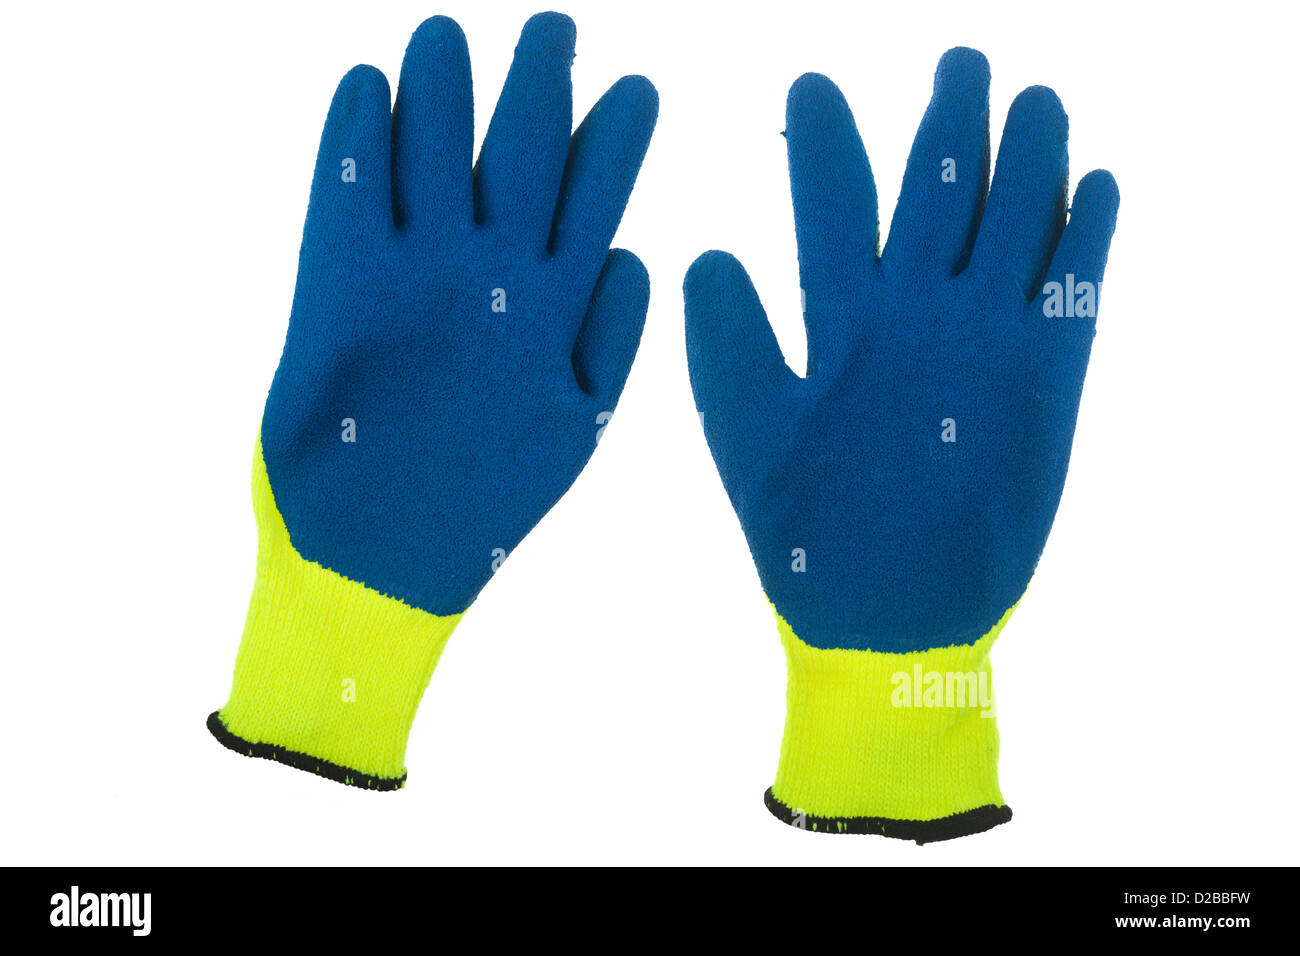 Par de workmans guantes de trabajo de plástico resistente a la humedad Foto de stock